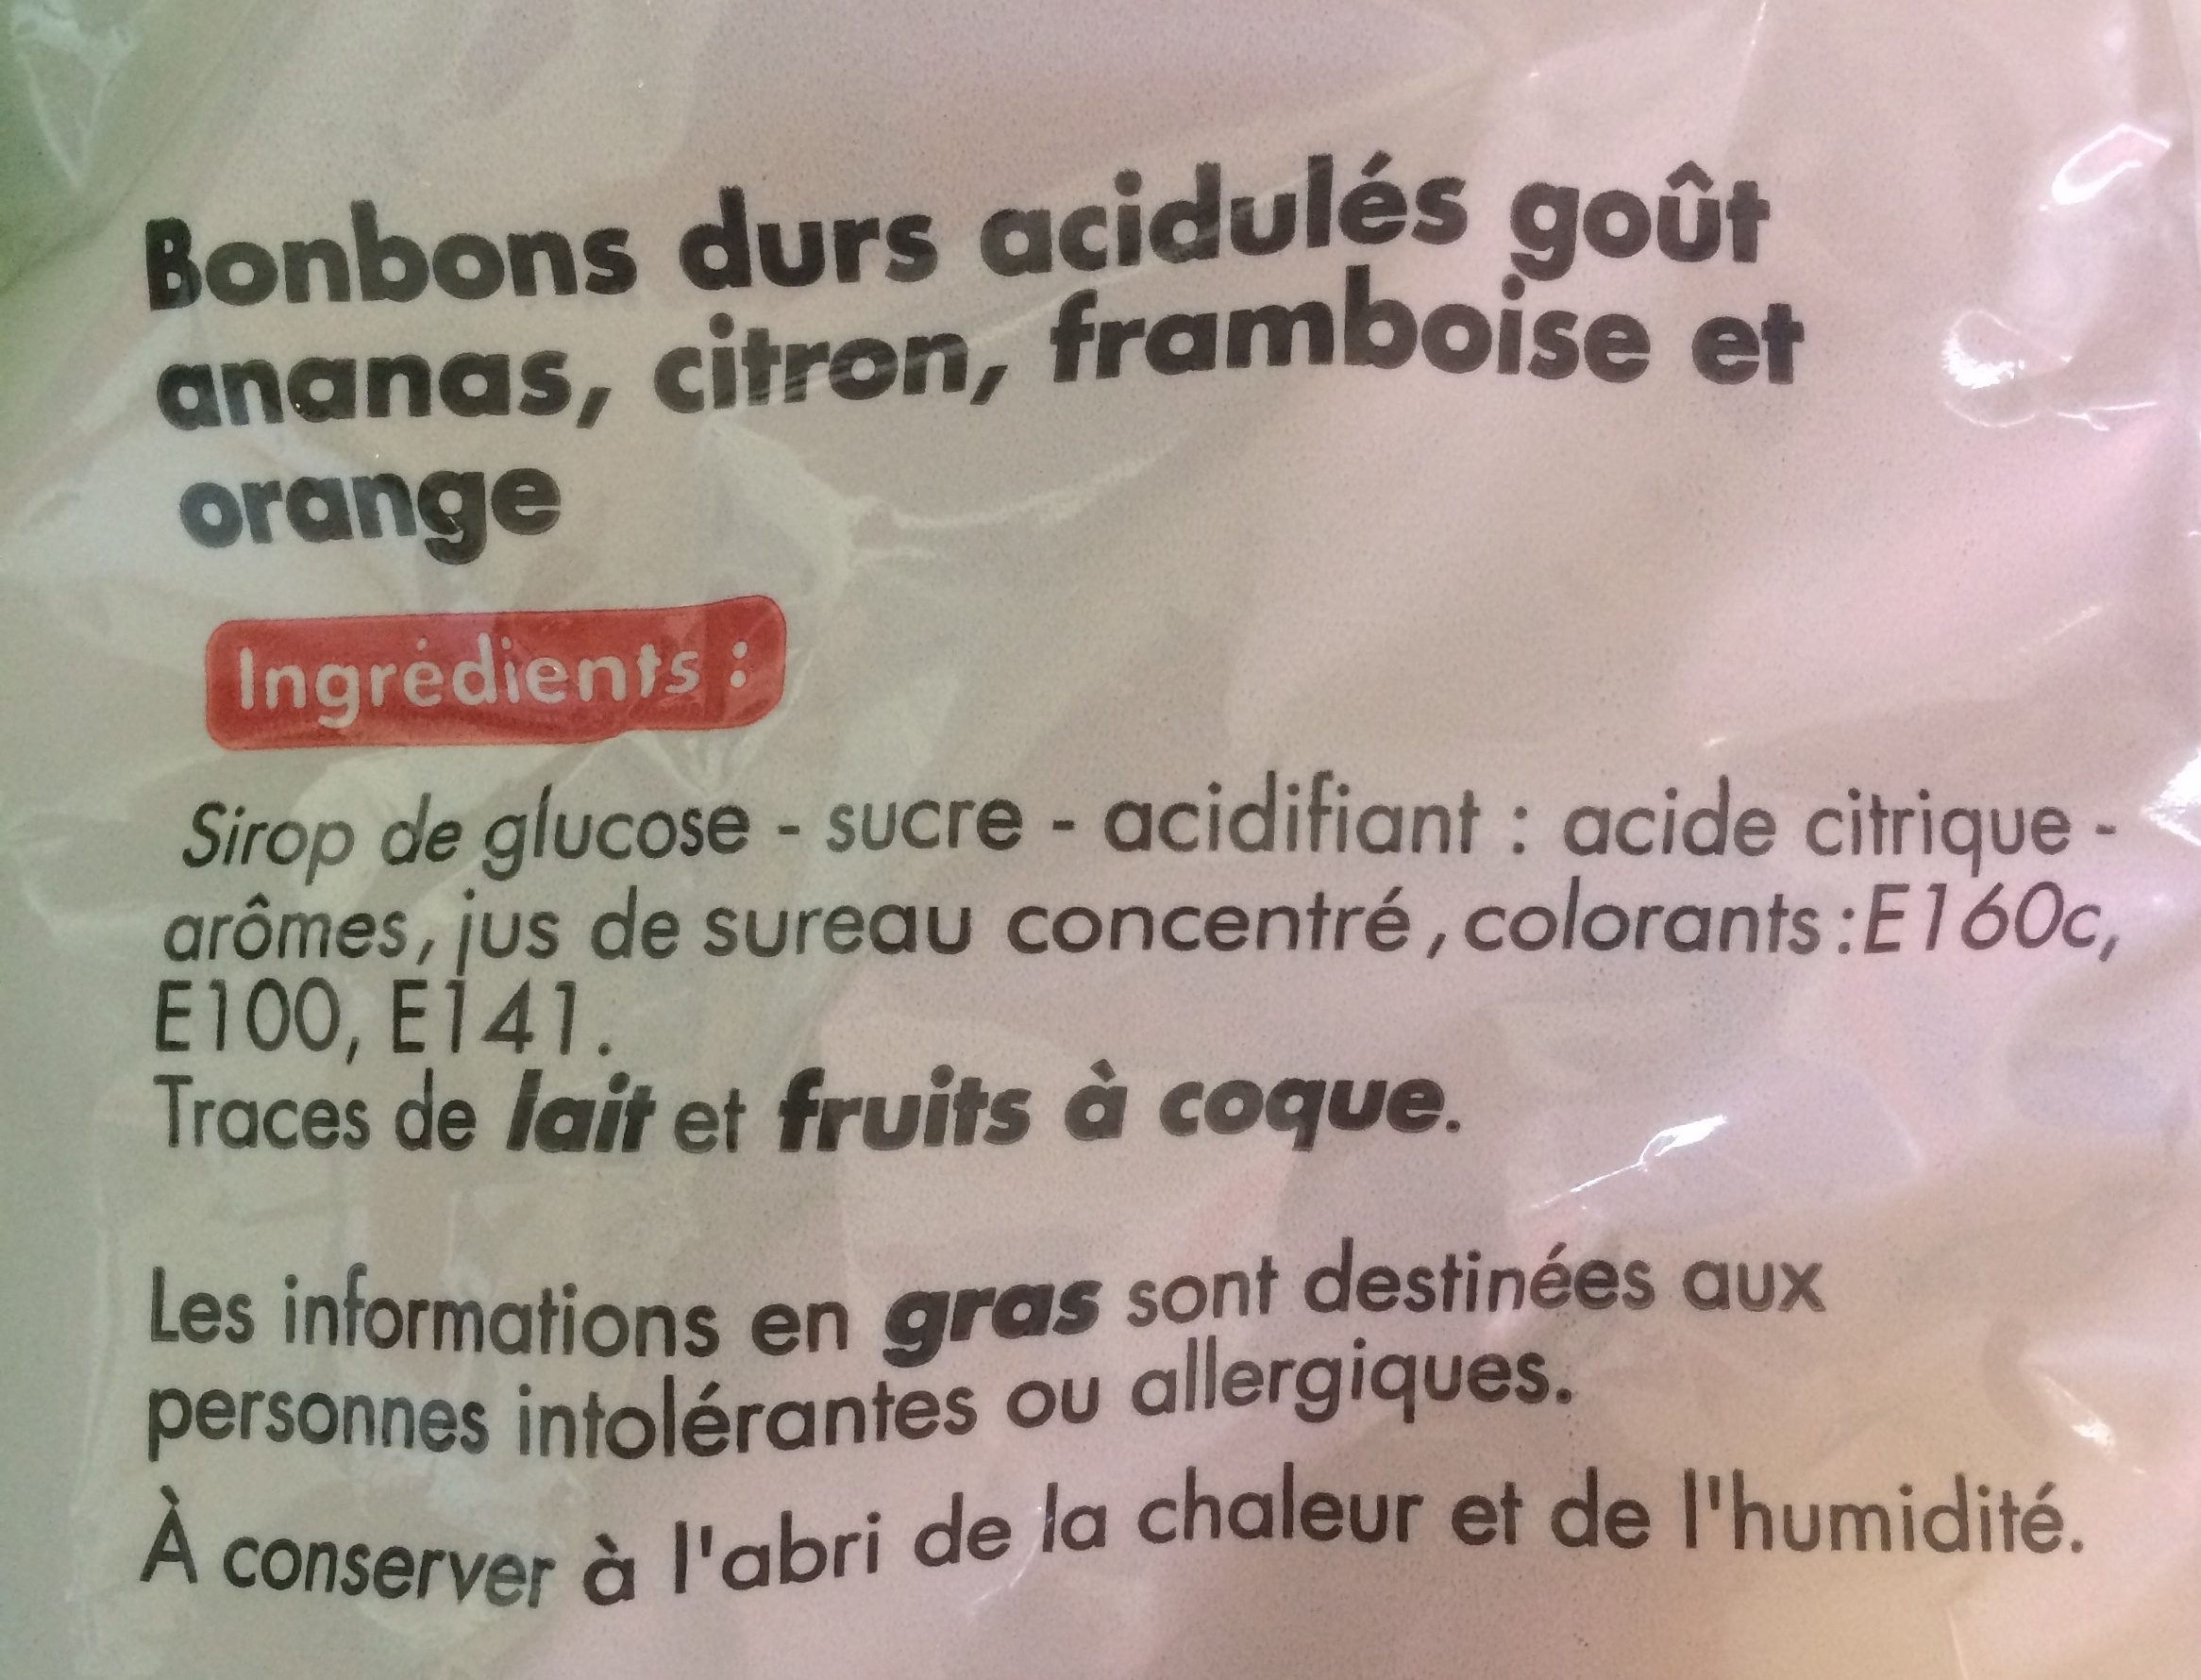 Bonbons durs acidulés - المكونات - fr